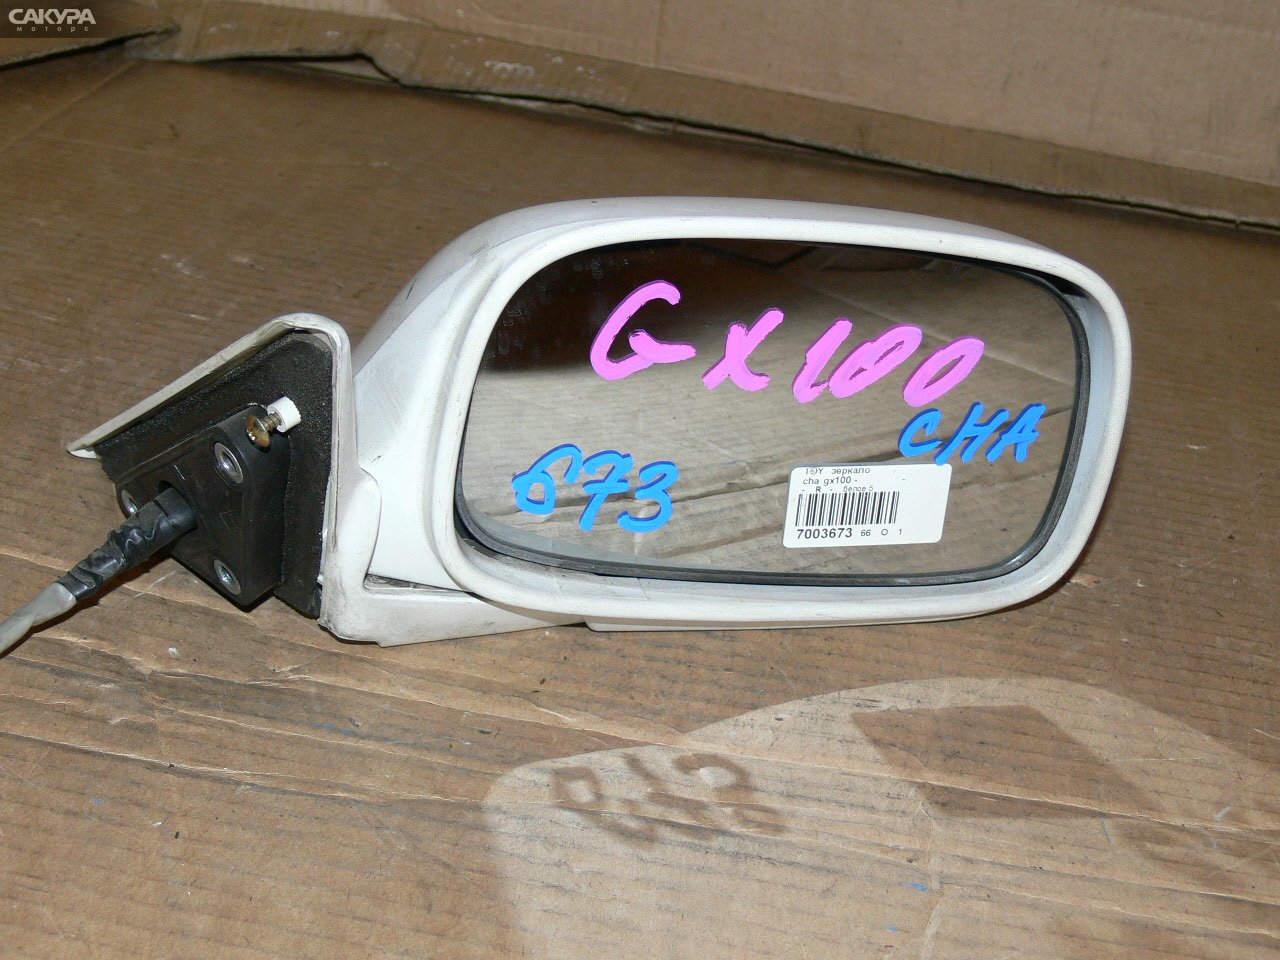 Зеркало боковое правое Toyota Chaser GX100: купить в Сакура Иркутск.